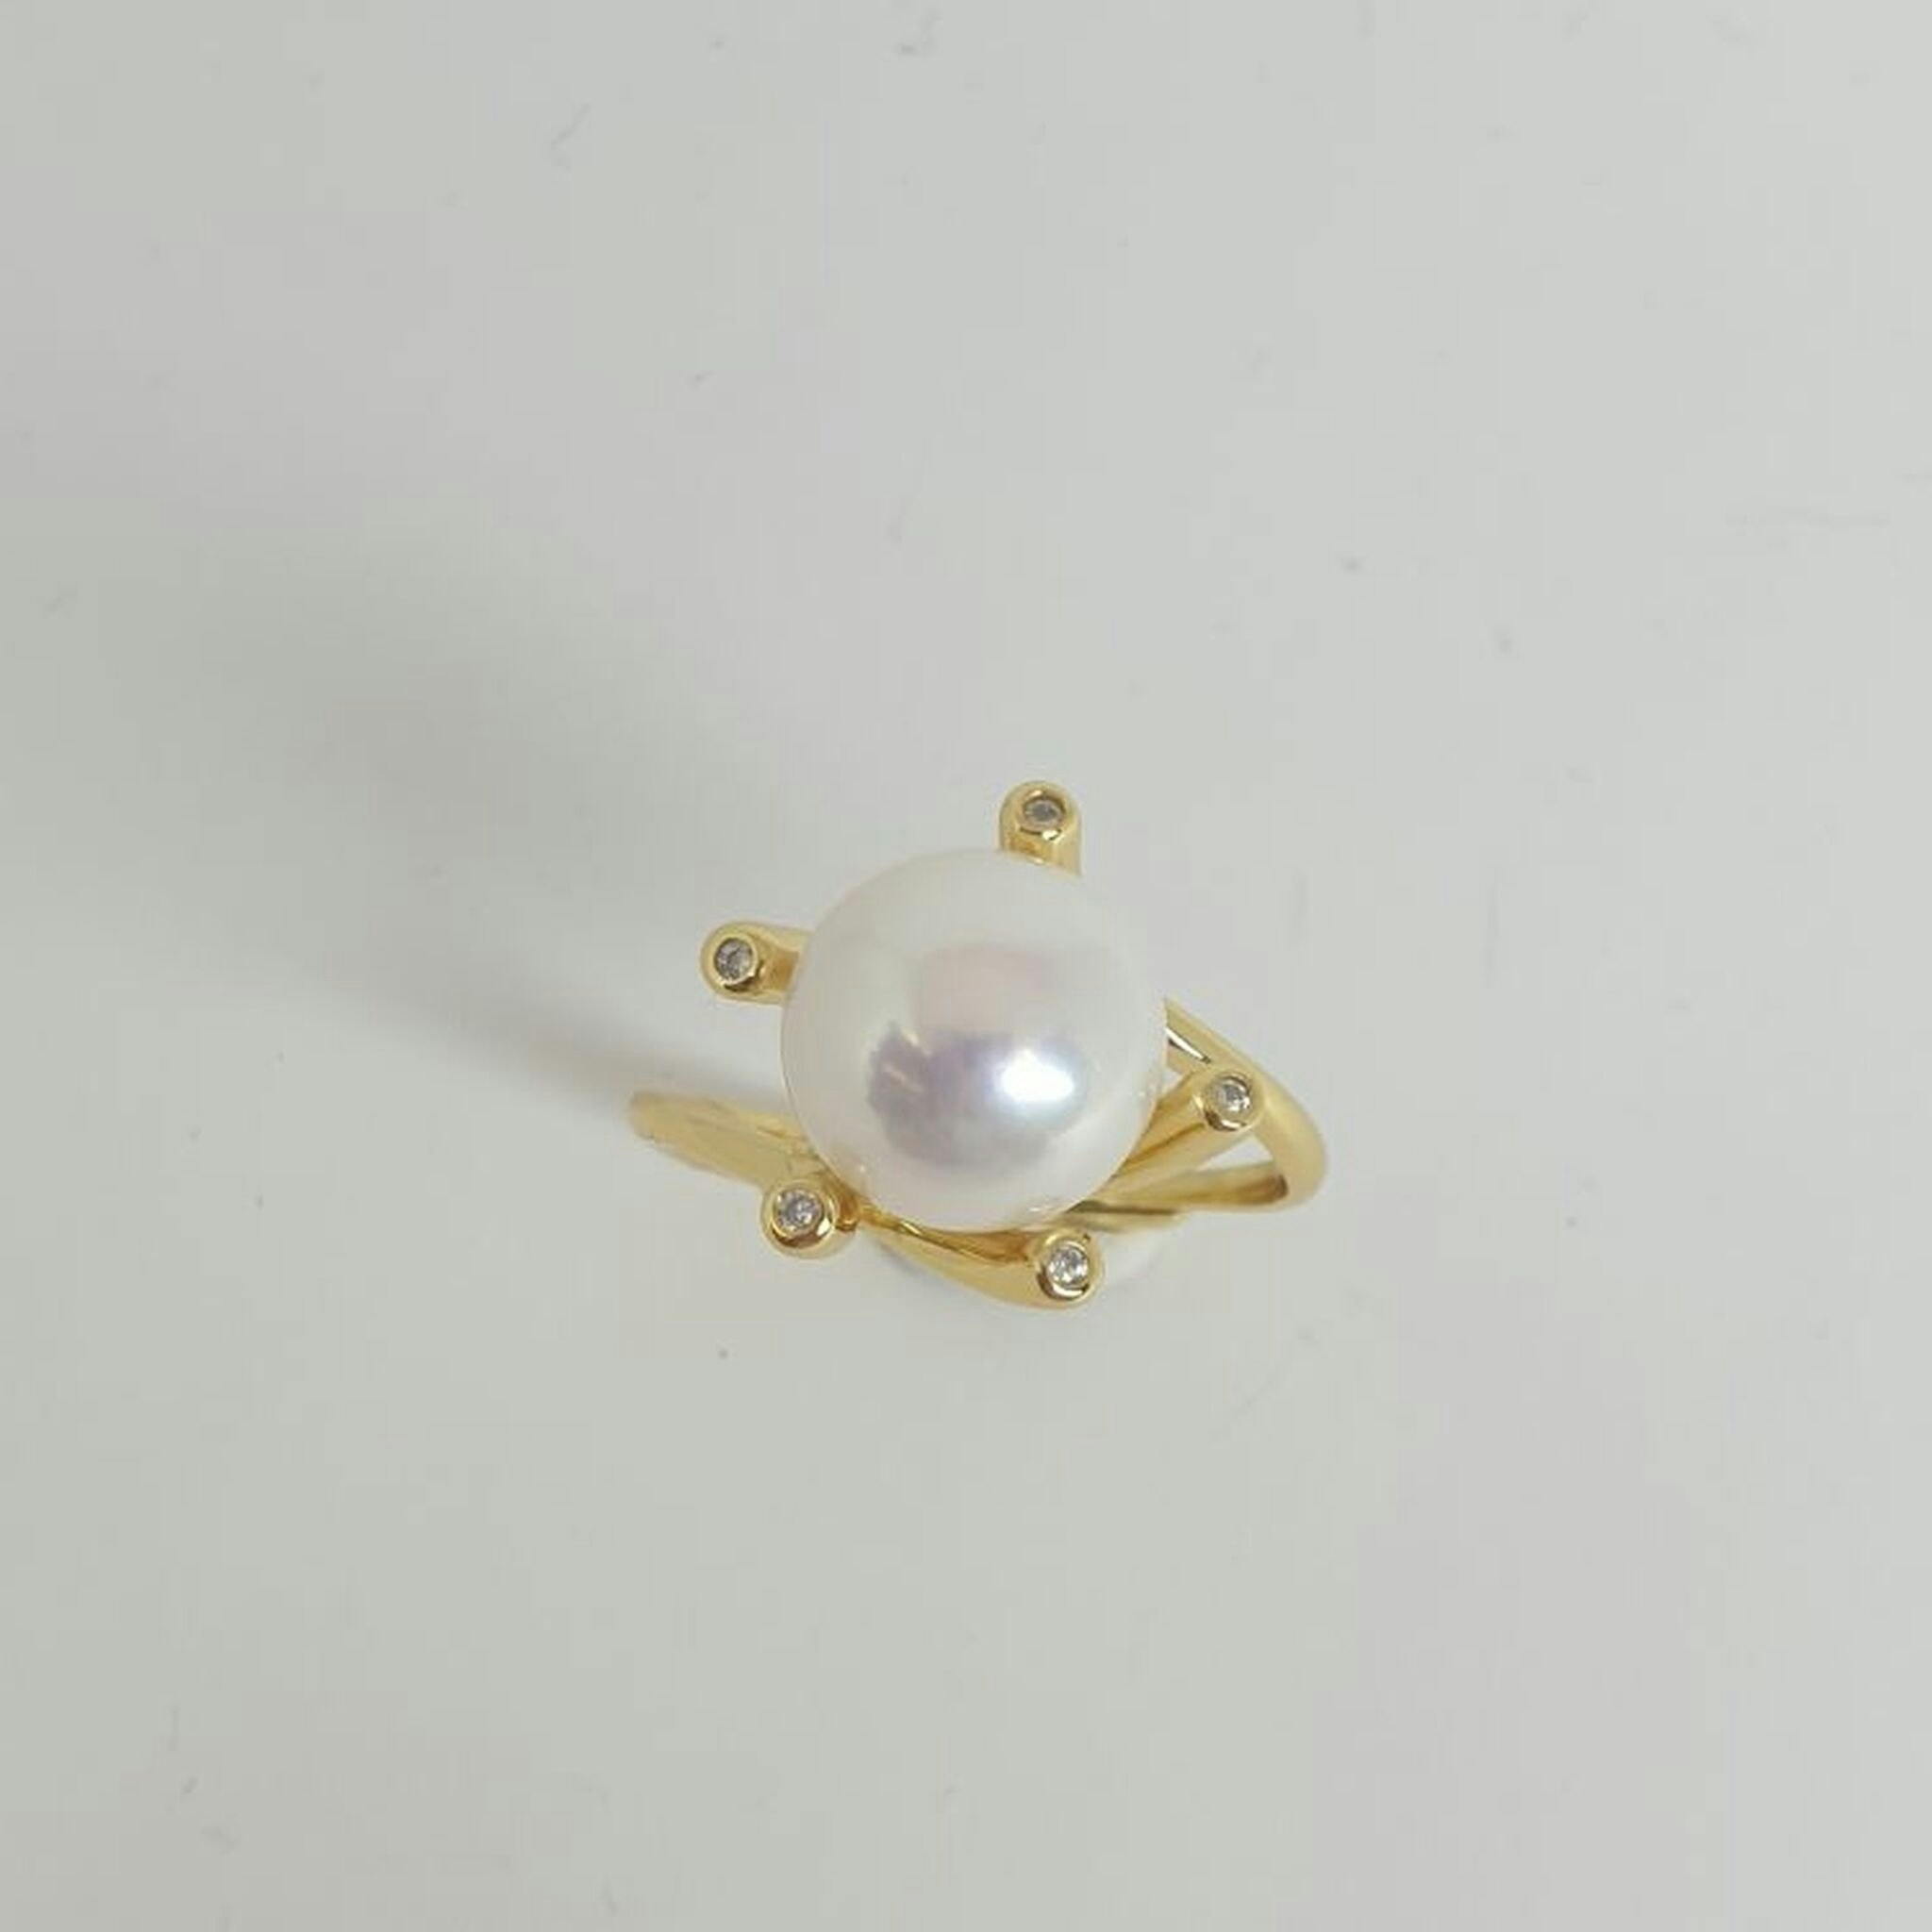 Förgylld ring i nickelfritt silver med stor vit odlad pärla